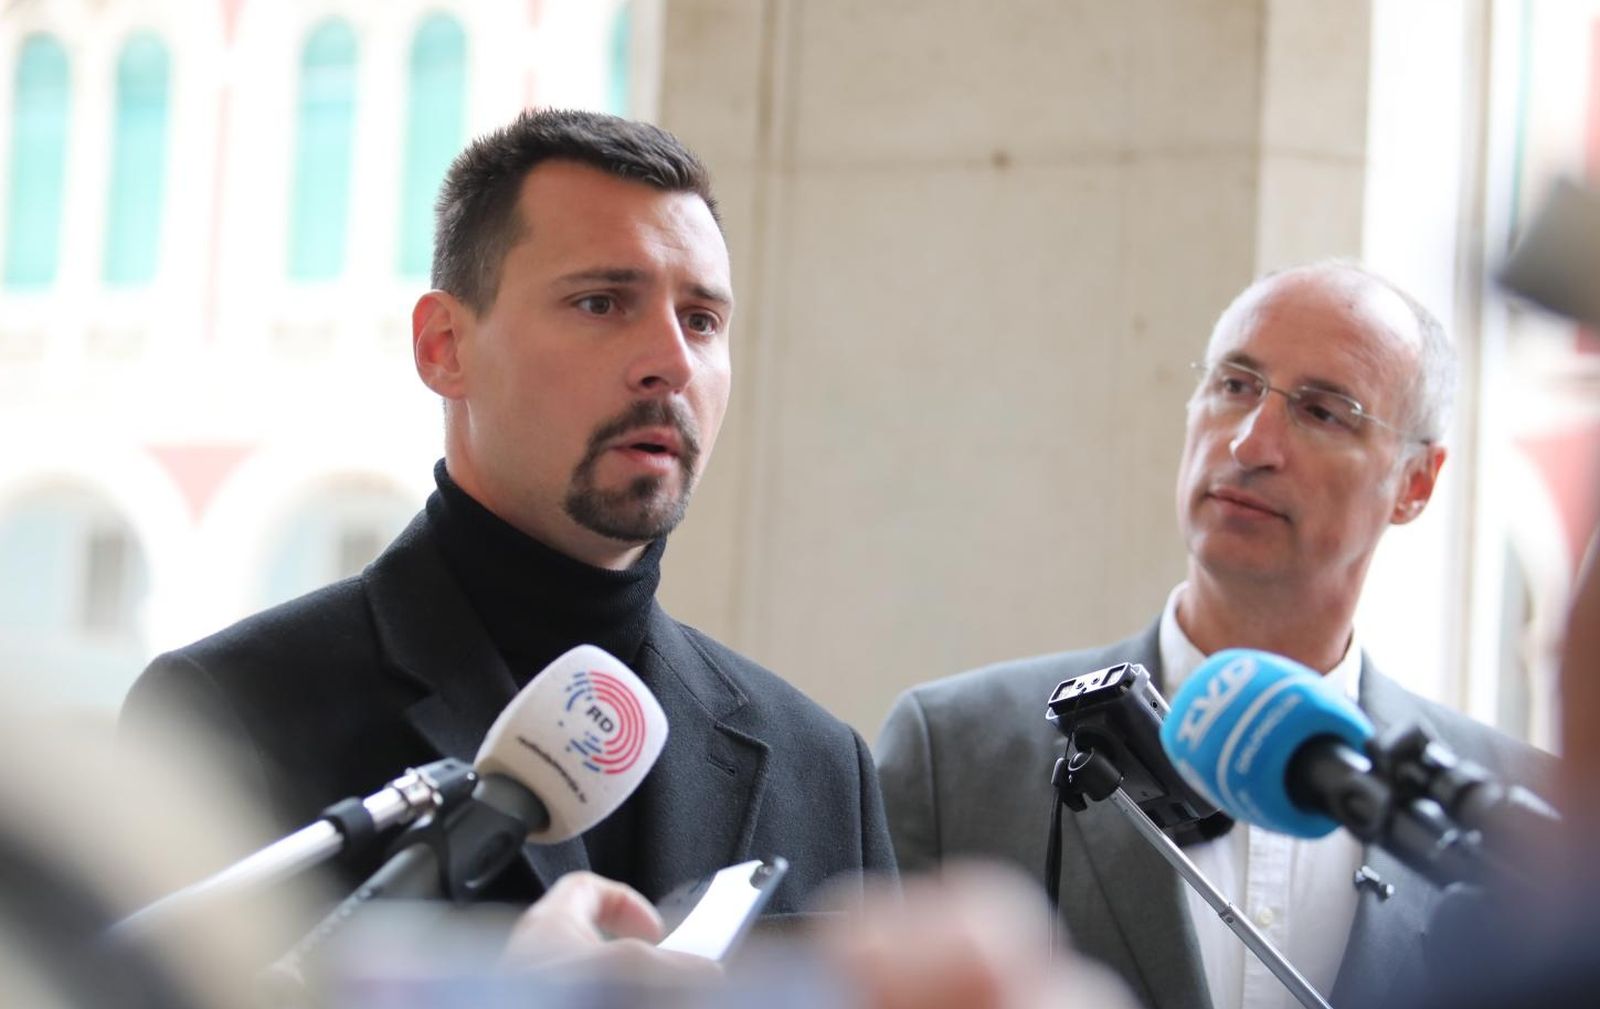 06.04.2021., Split - Ivica Puljak i Bojan Ivosevic na konferenciji za
medije najavili zajednicki izlazak na izbore. Photo: Ivo Cagalj/PIXSELL